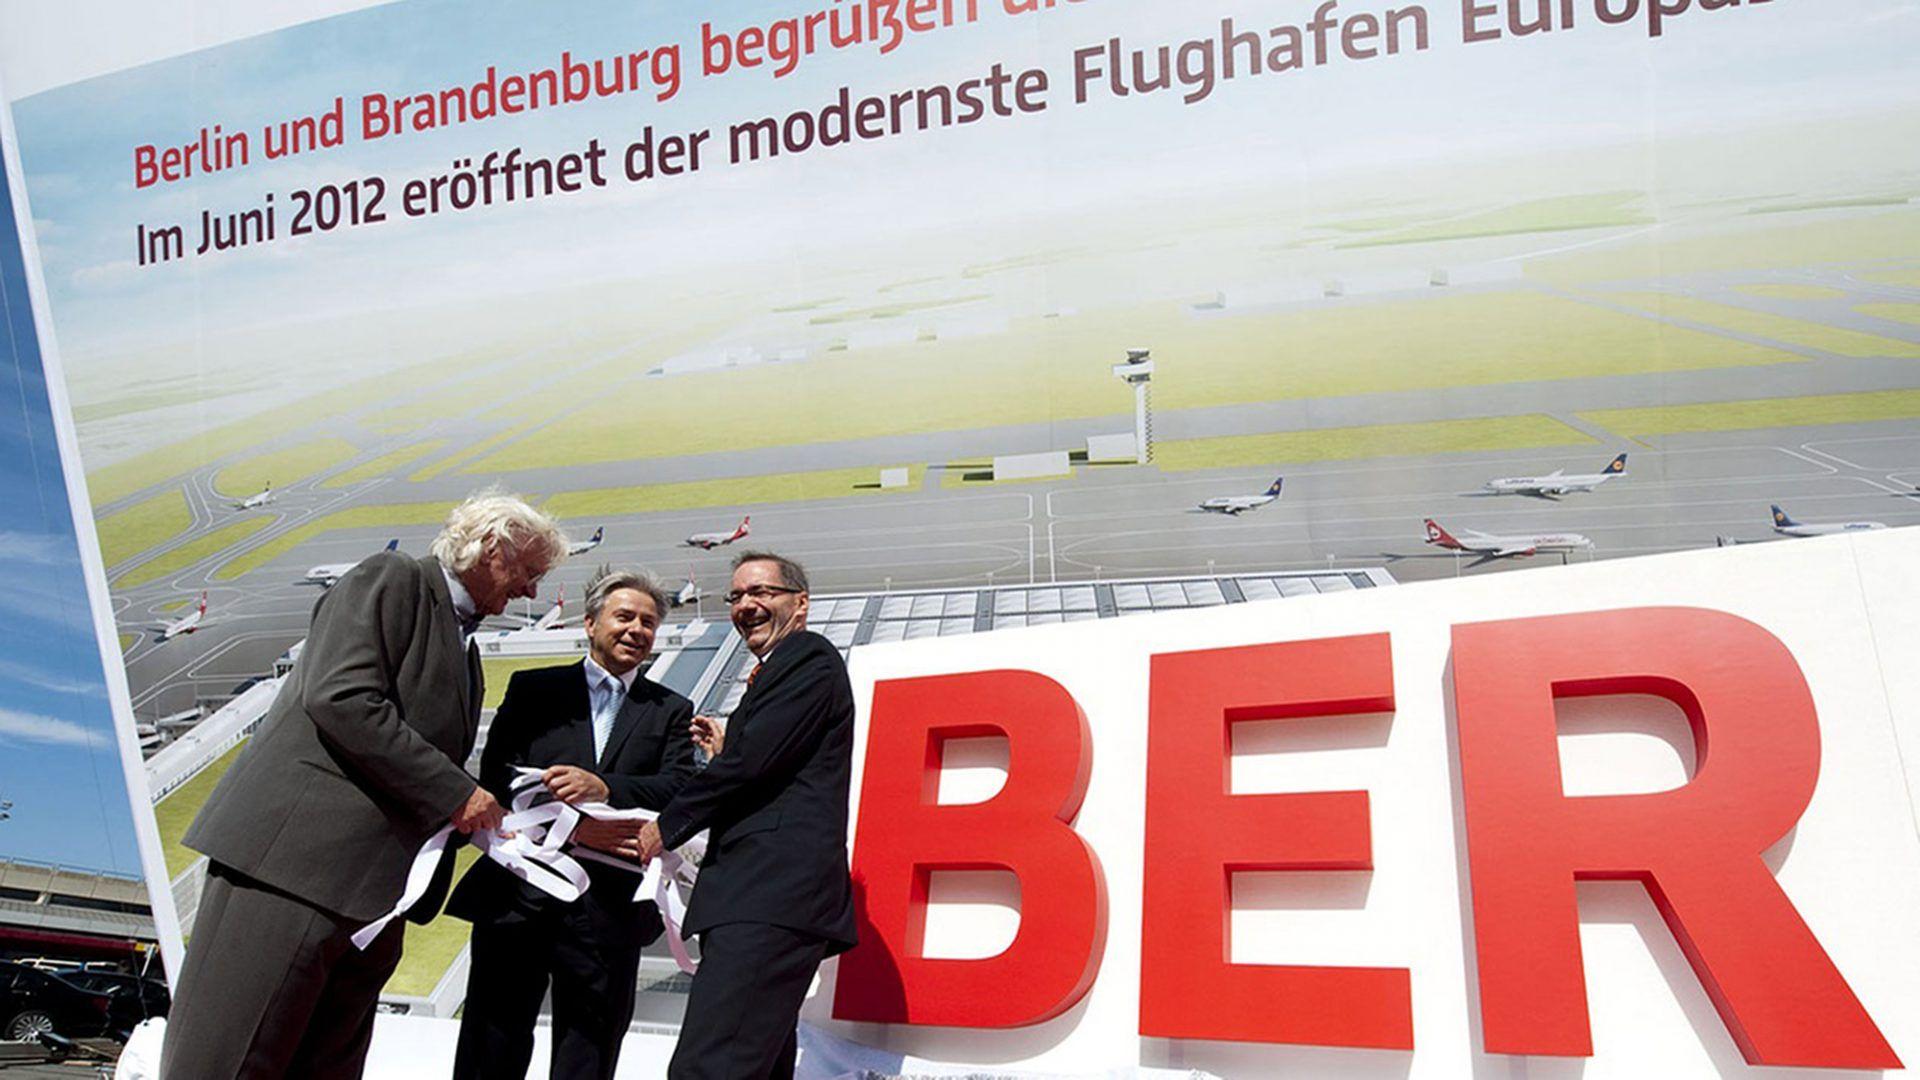 Ber Logo - Naming and Corporate Design for BER | Realgestalt GmbH, Berlin